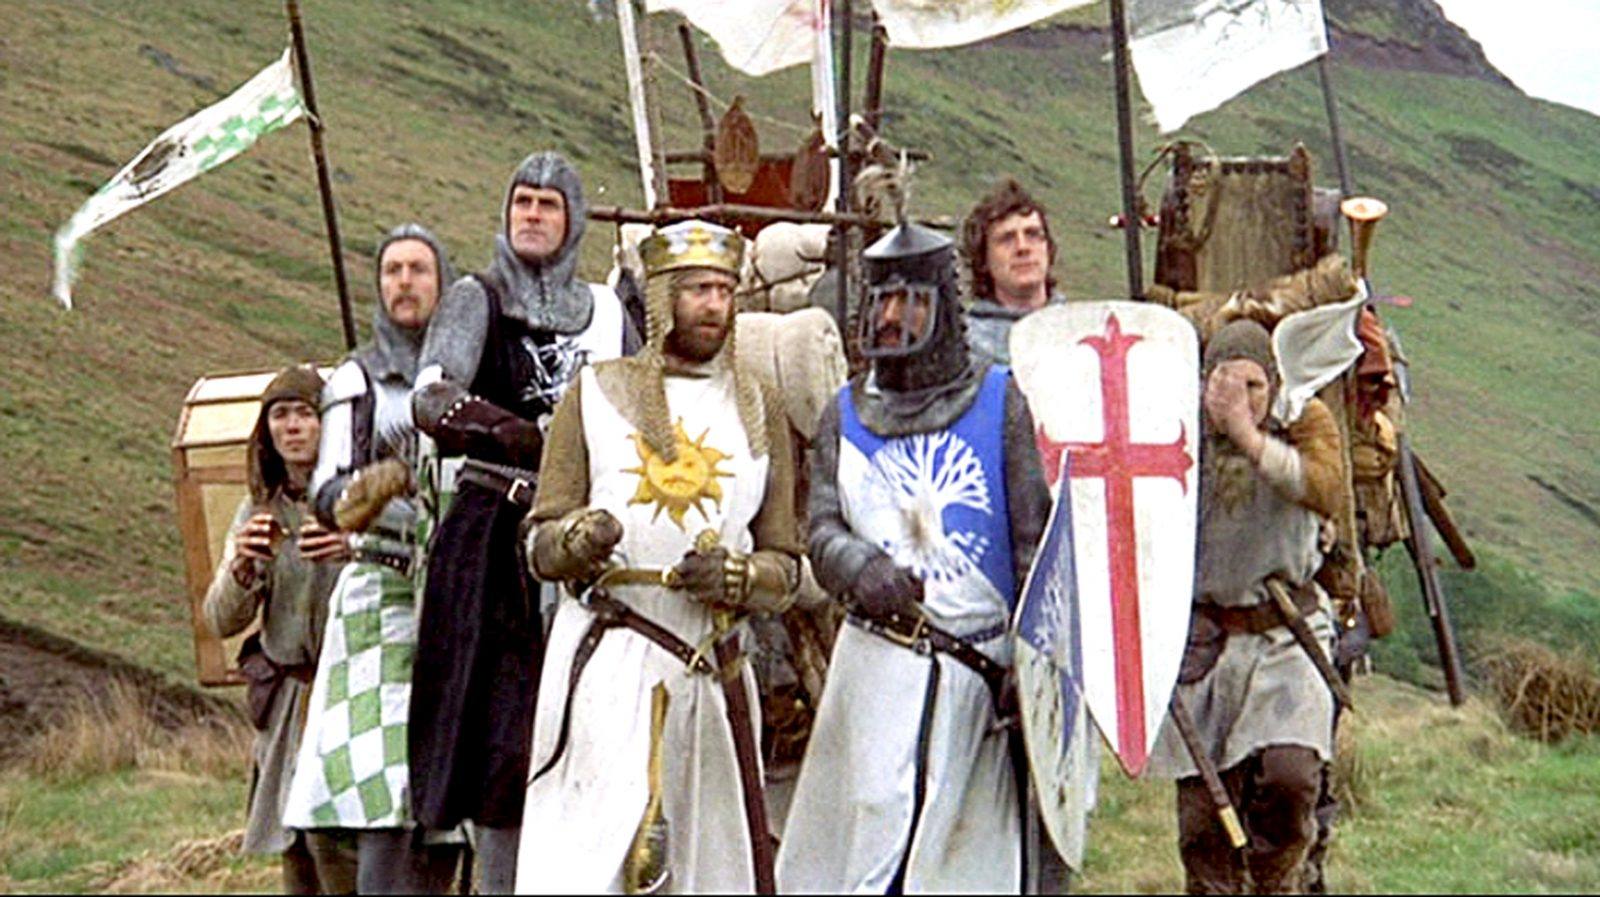 Monty Python and The Holy Grail - O humor inesquecível do grupo Monty Python